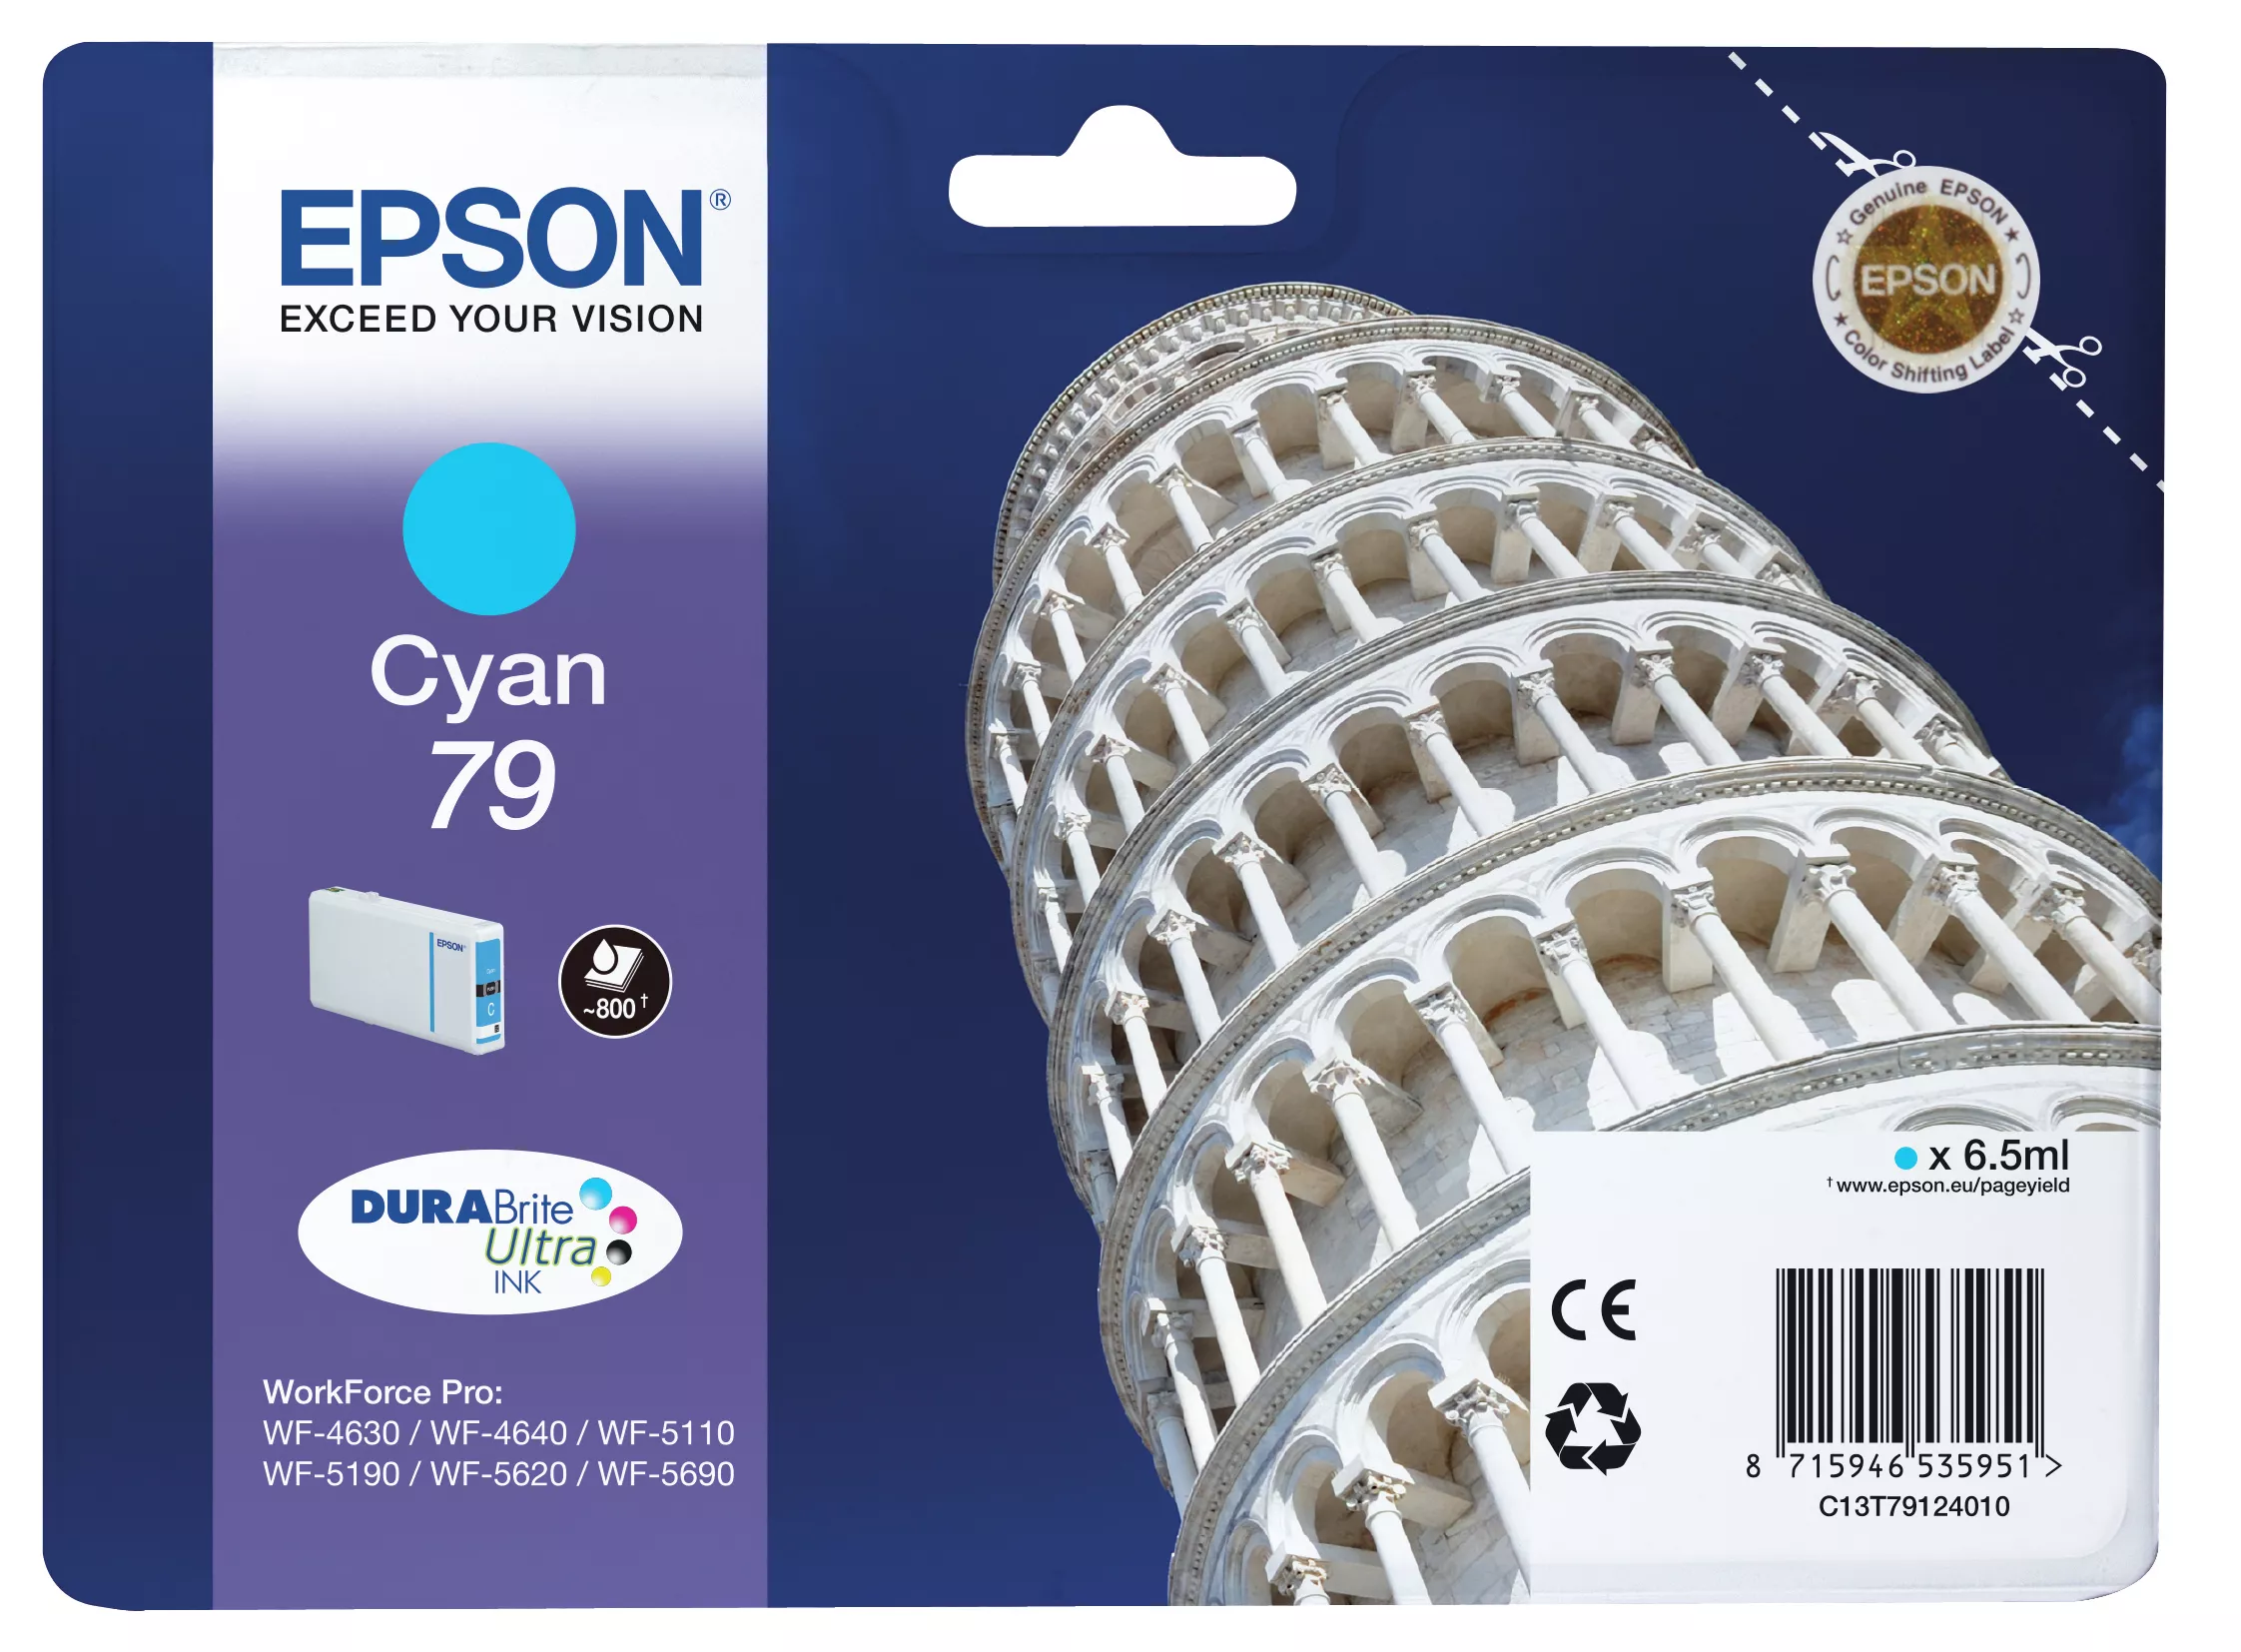 Vente EPSON 79 cartouche dencre cyan capacité standard 6.5ml au meilleur prix